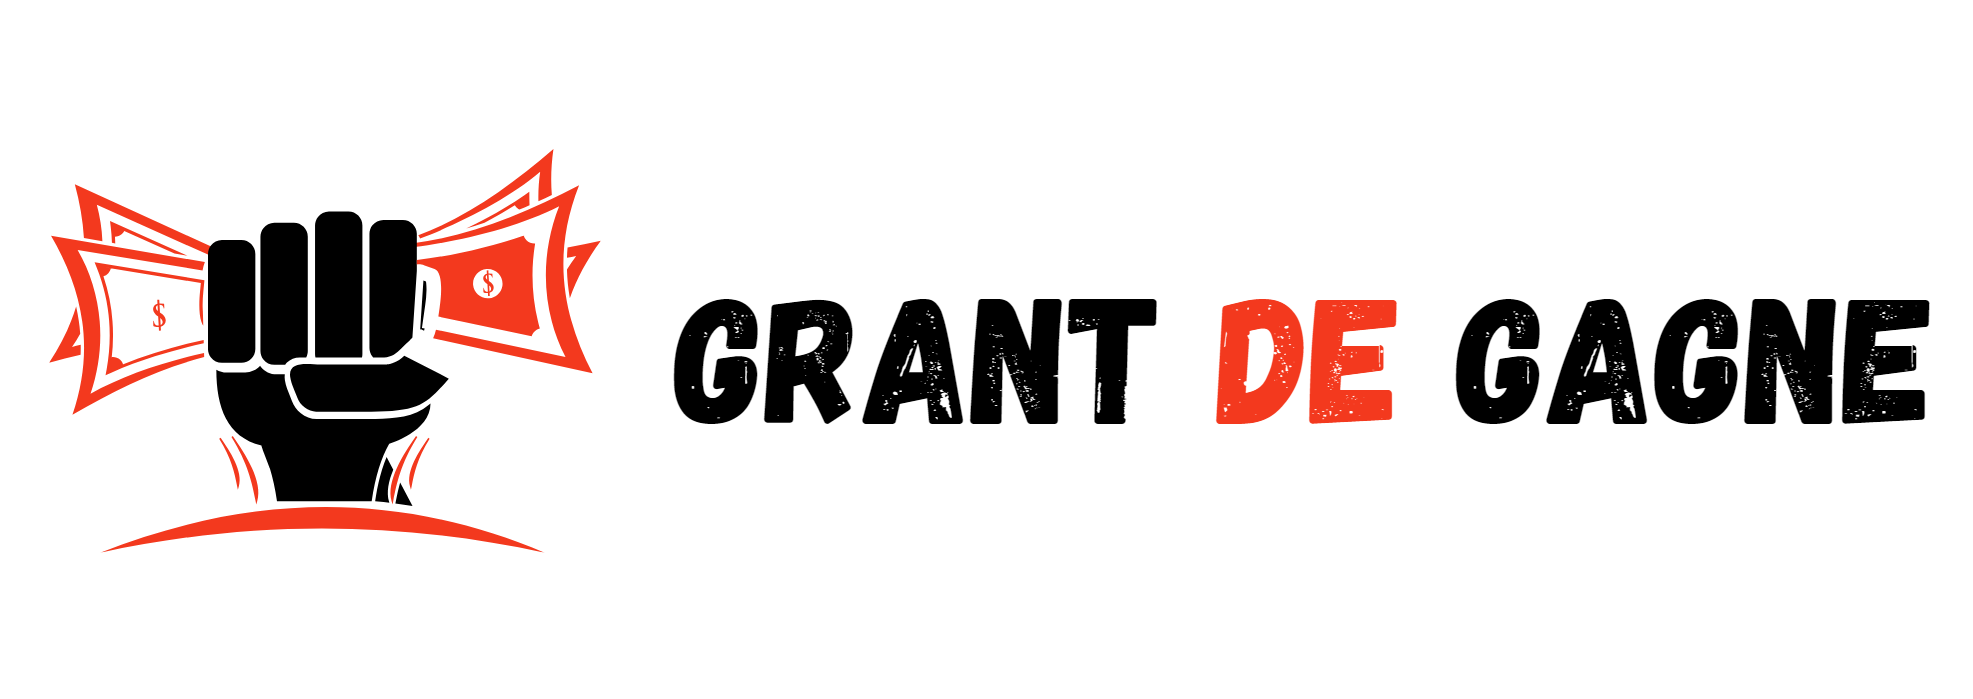 Grant De Gagne